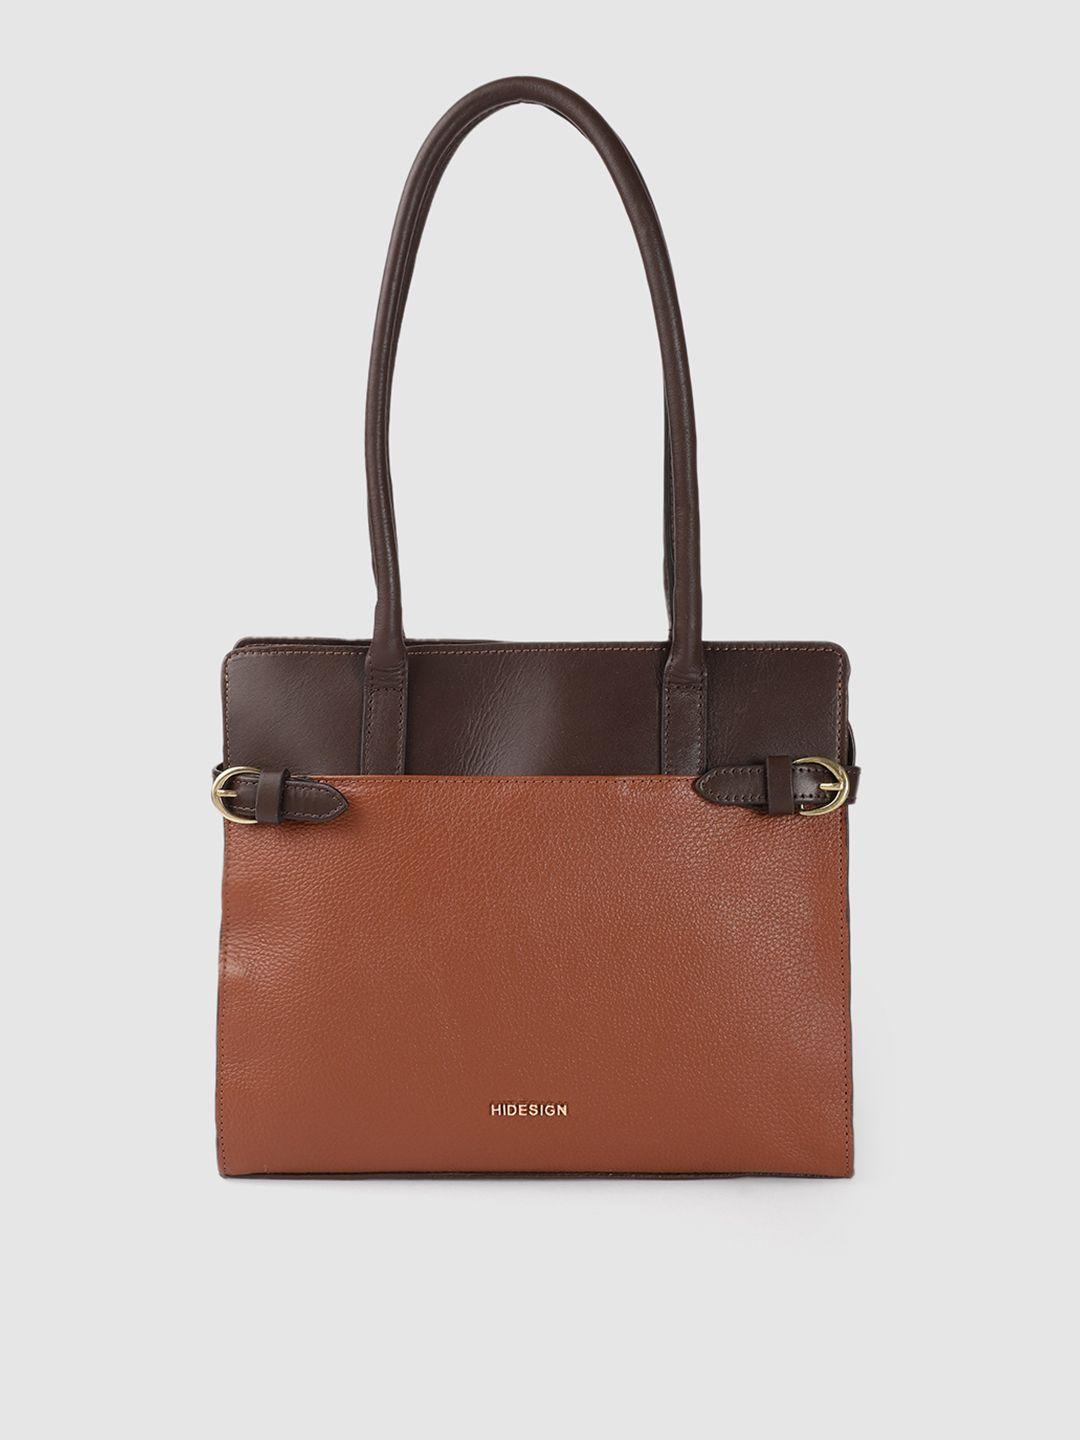 hidesign tan brown leather structured shoulder bag